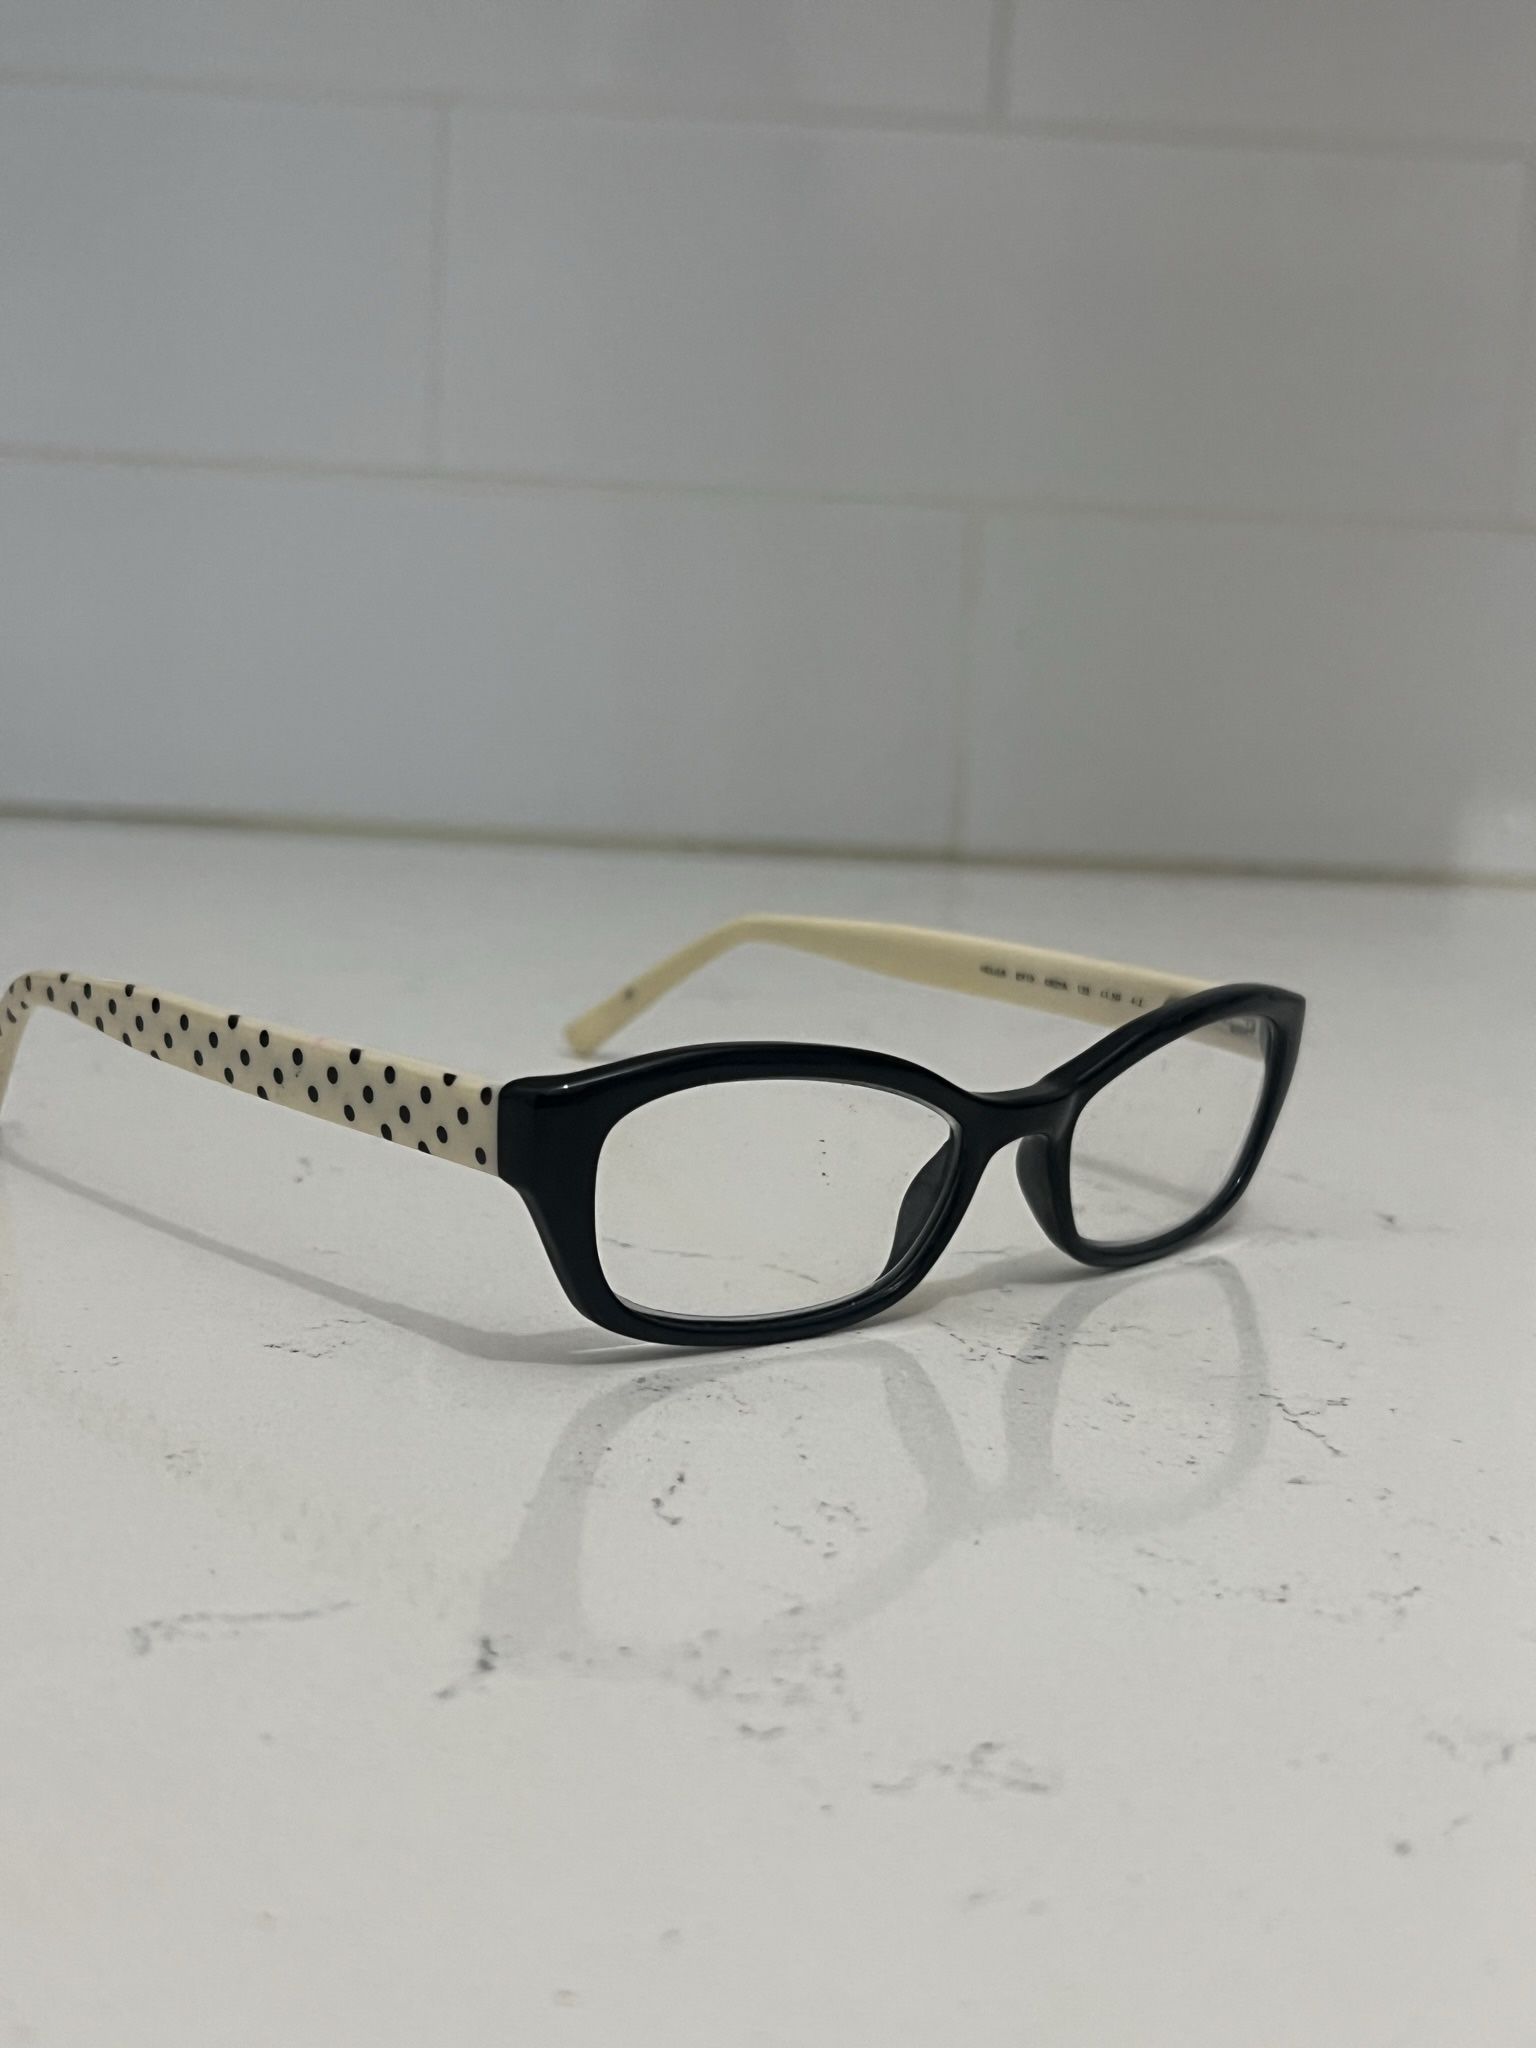 Kate Spade Women’s Eyeglasses Optical Glasses Frames